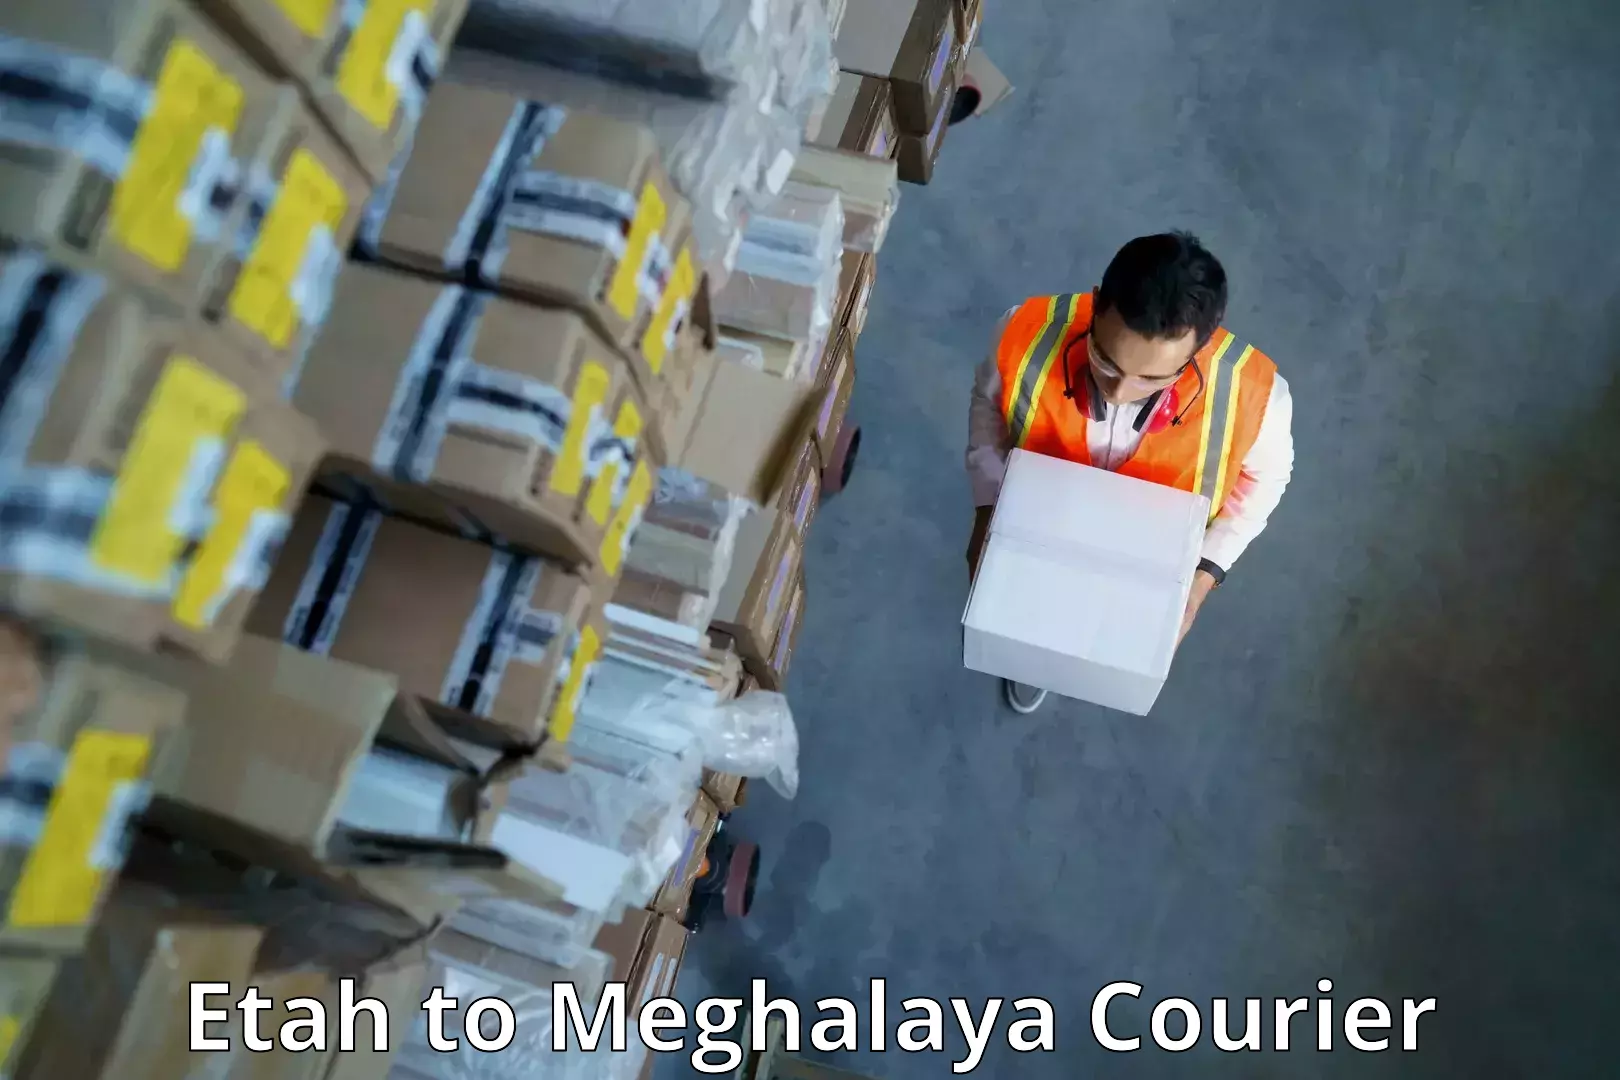 Rapid shipping services Etah to Meghalaya